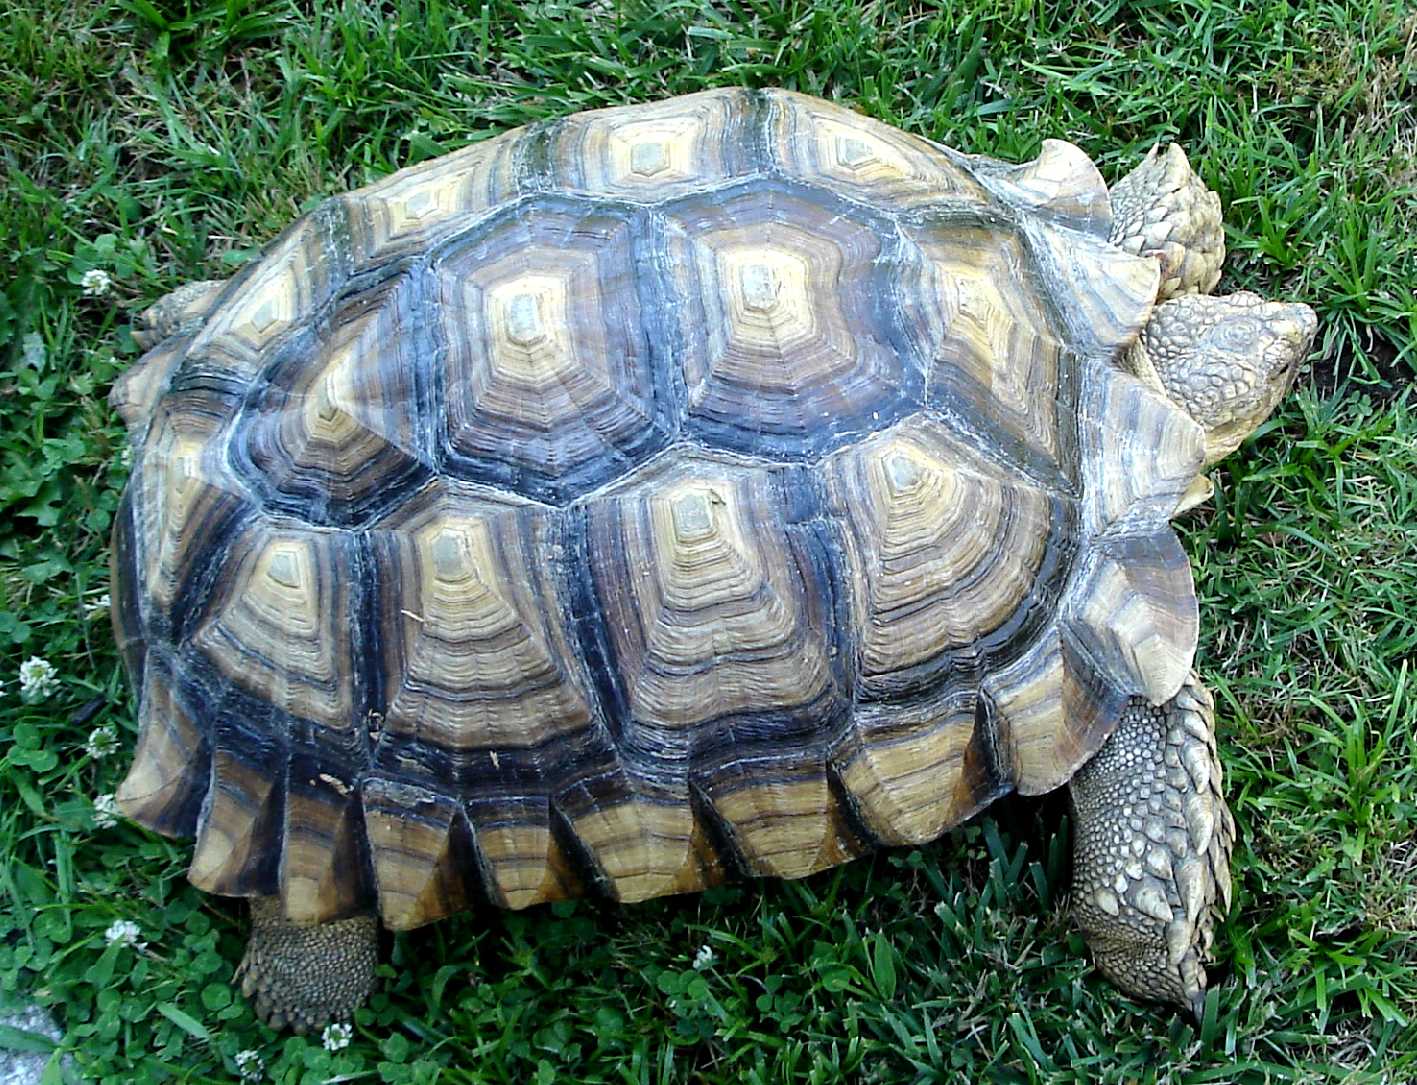 Гигантская черепаха